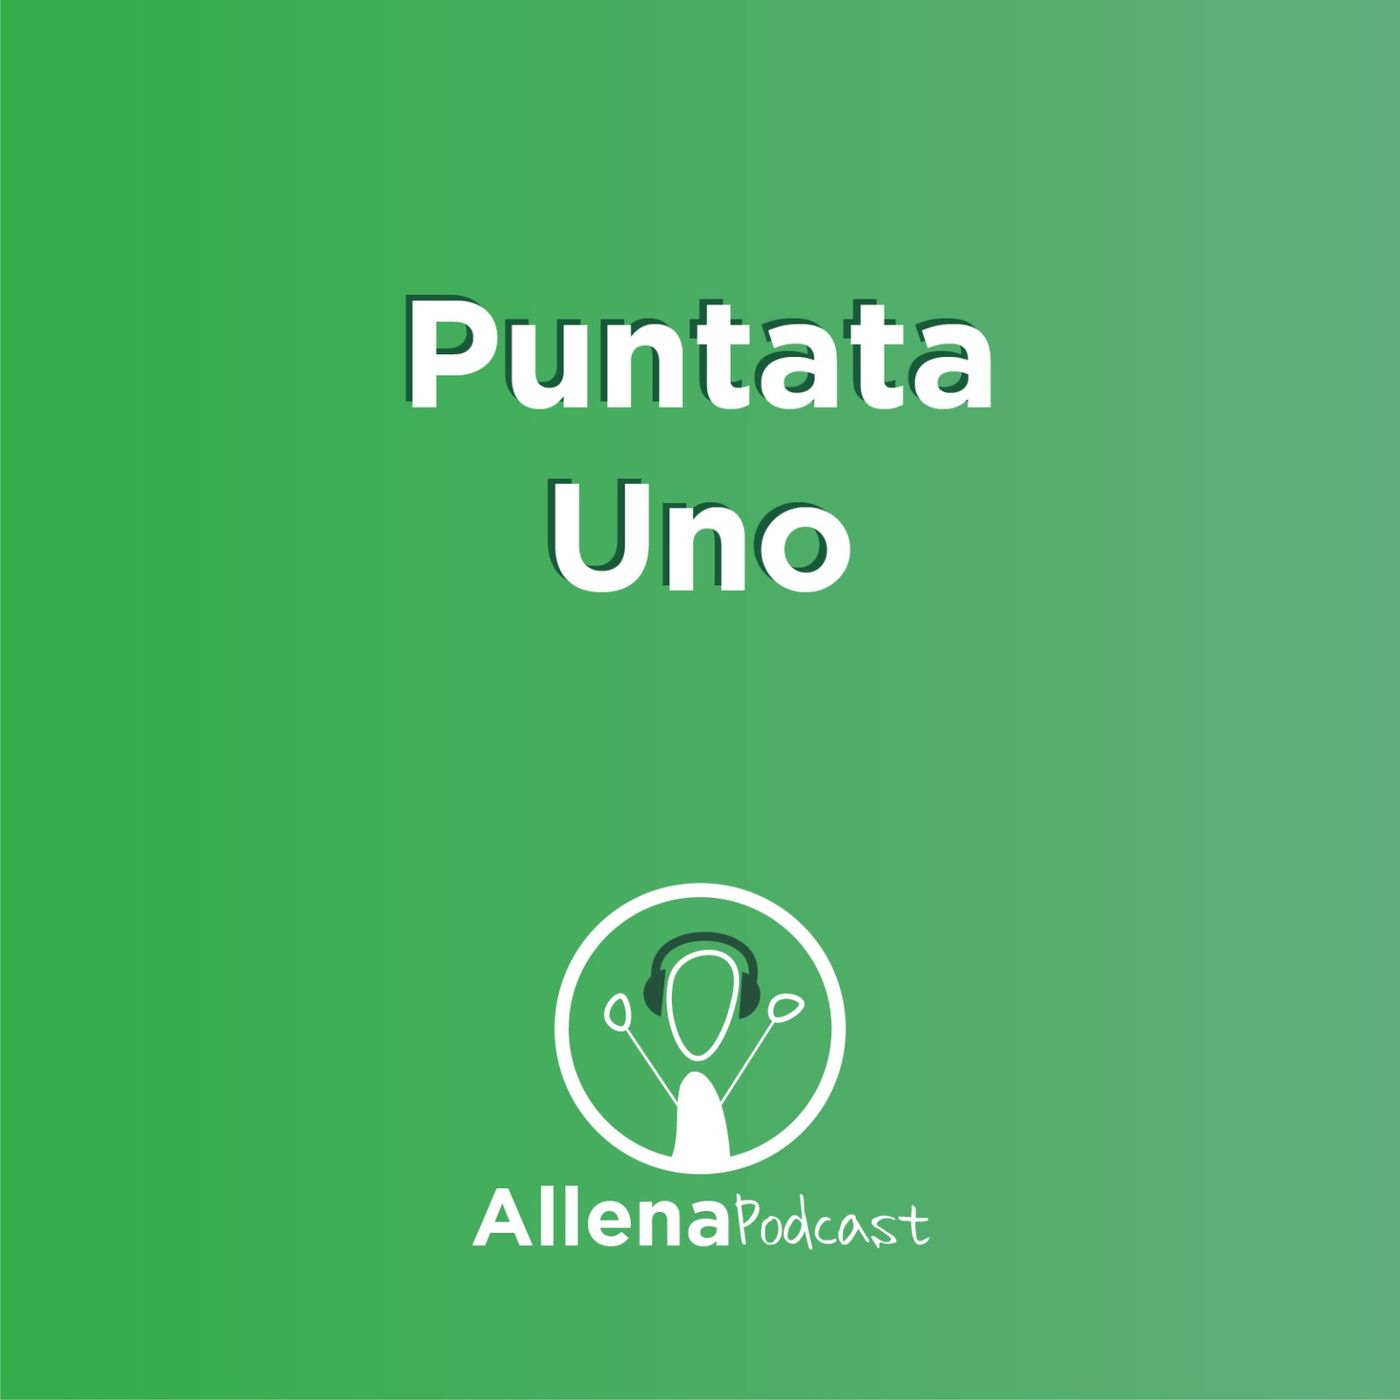 AllenaPodcast Puntata 1